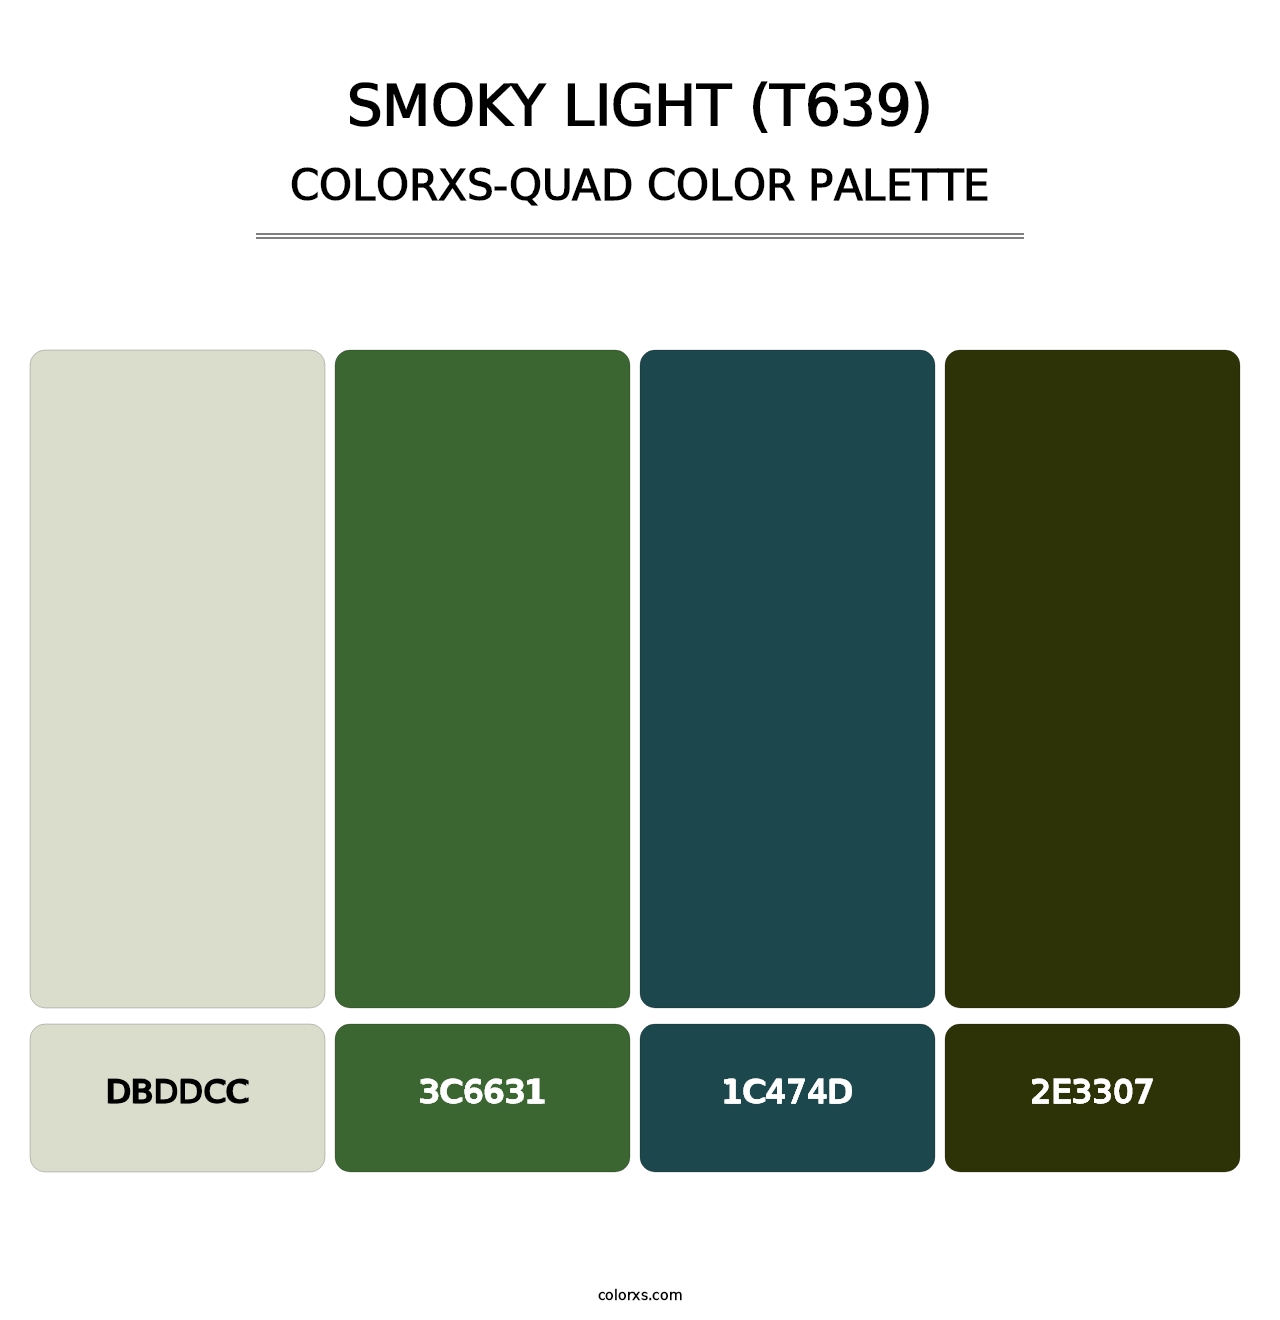 Smoky Light (T639) - Colorxs Quad Palette